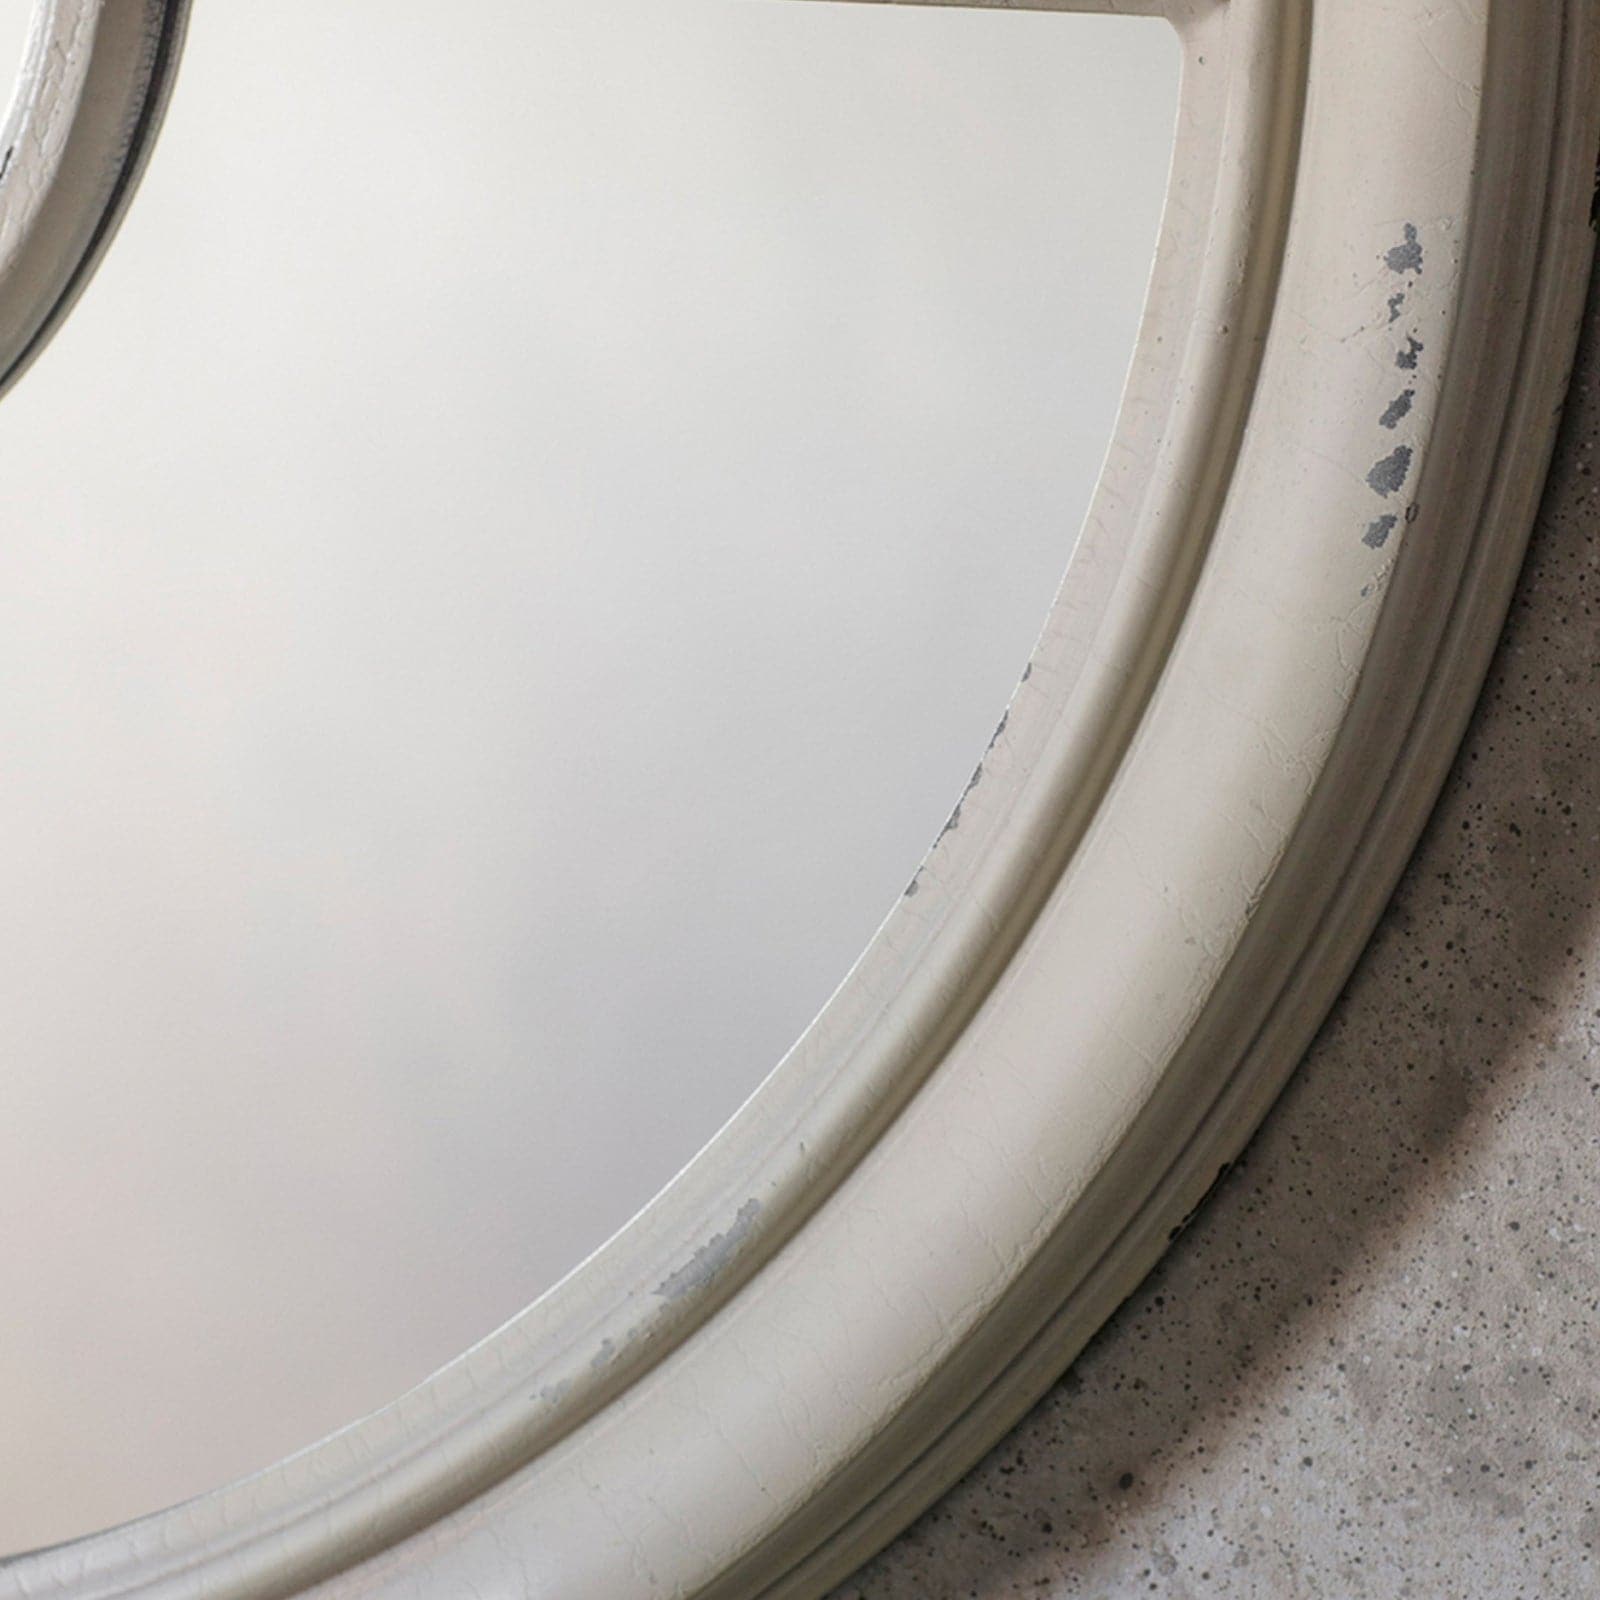 Distressed White Round Window Mirror - The Farthing